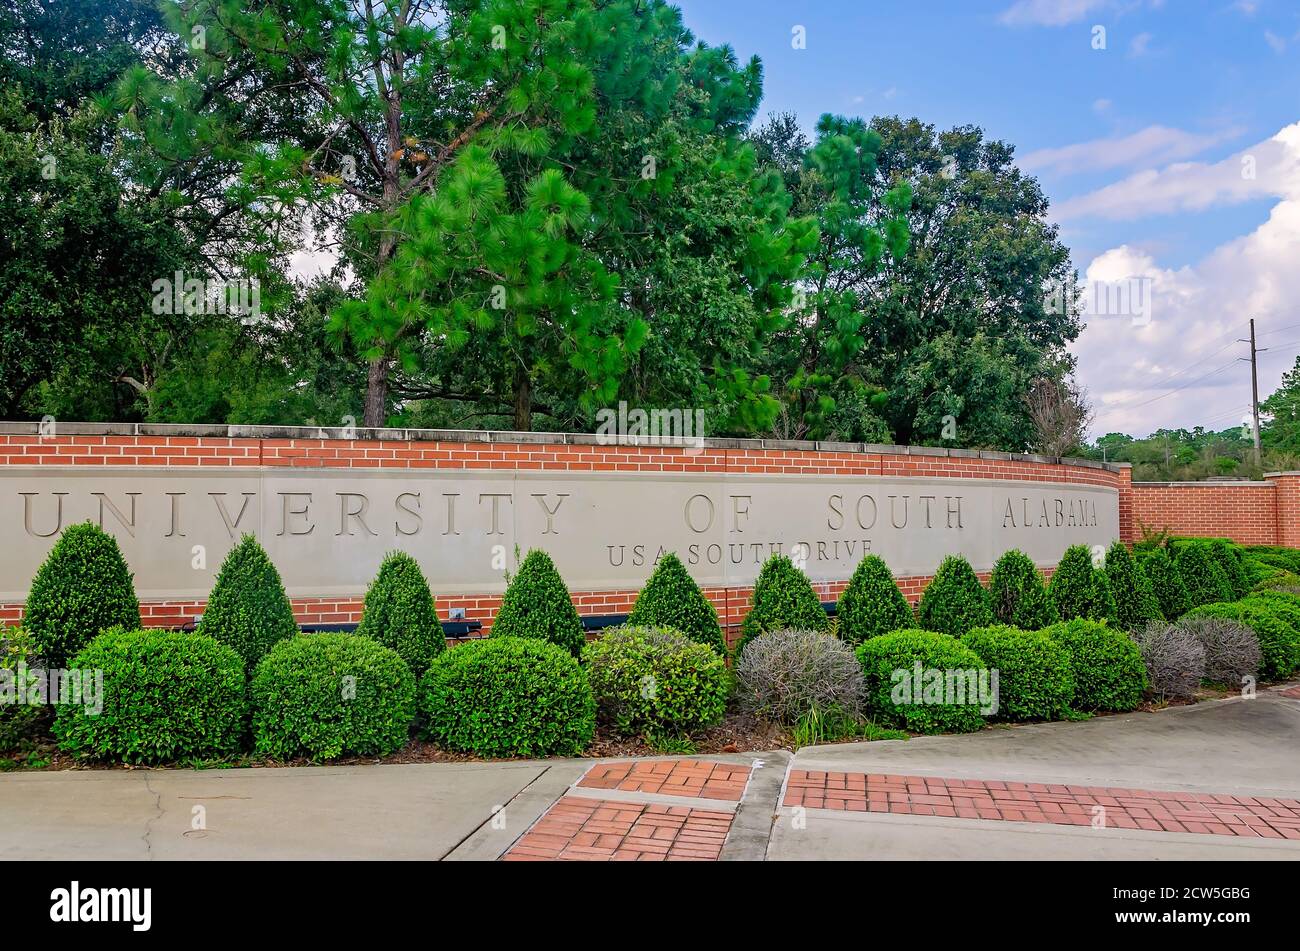 Das Eingangsschild der University of South Alabama ist am 26. September 2020 in Mobile, Alabama abgebildet. Die öffentliche Forschungsuniversität wurde 1963 gegründet. Stockfoto